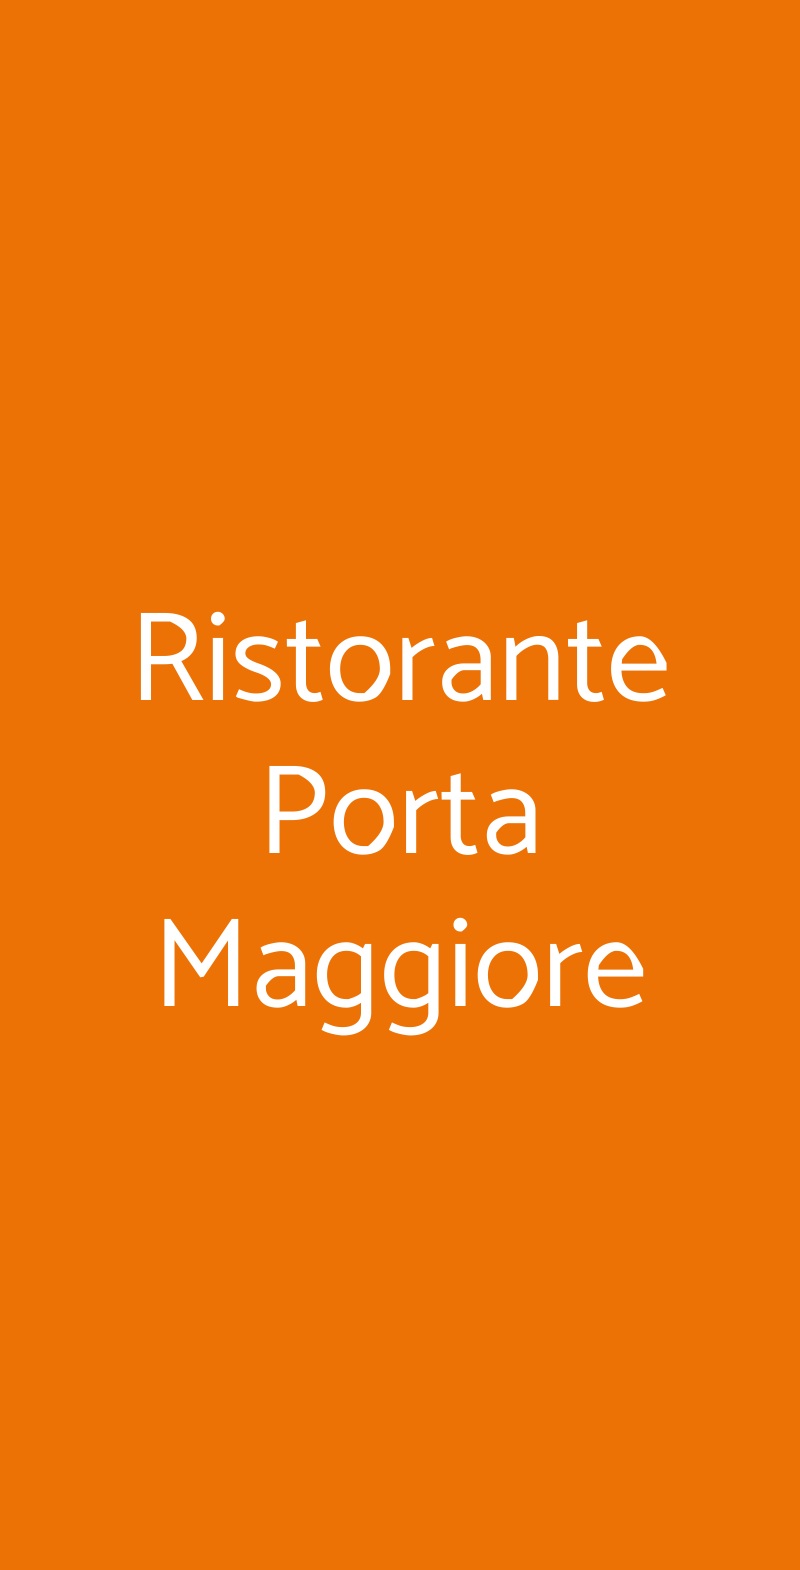 Ristorante Porta Maggiore Roma menù 1 pagina